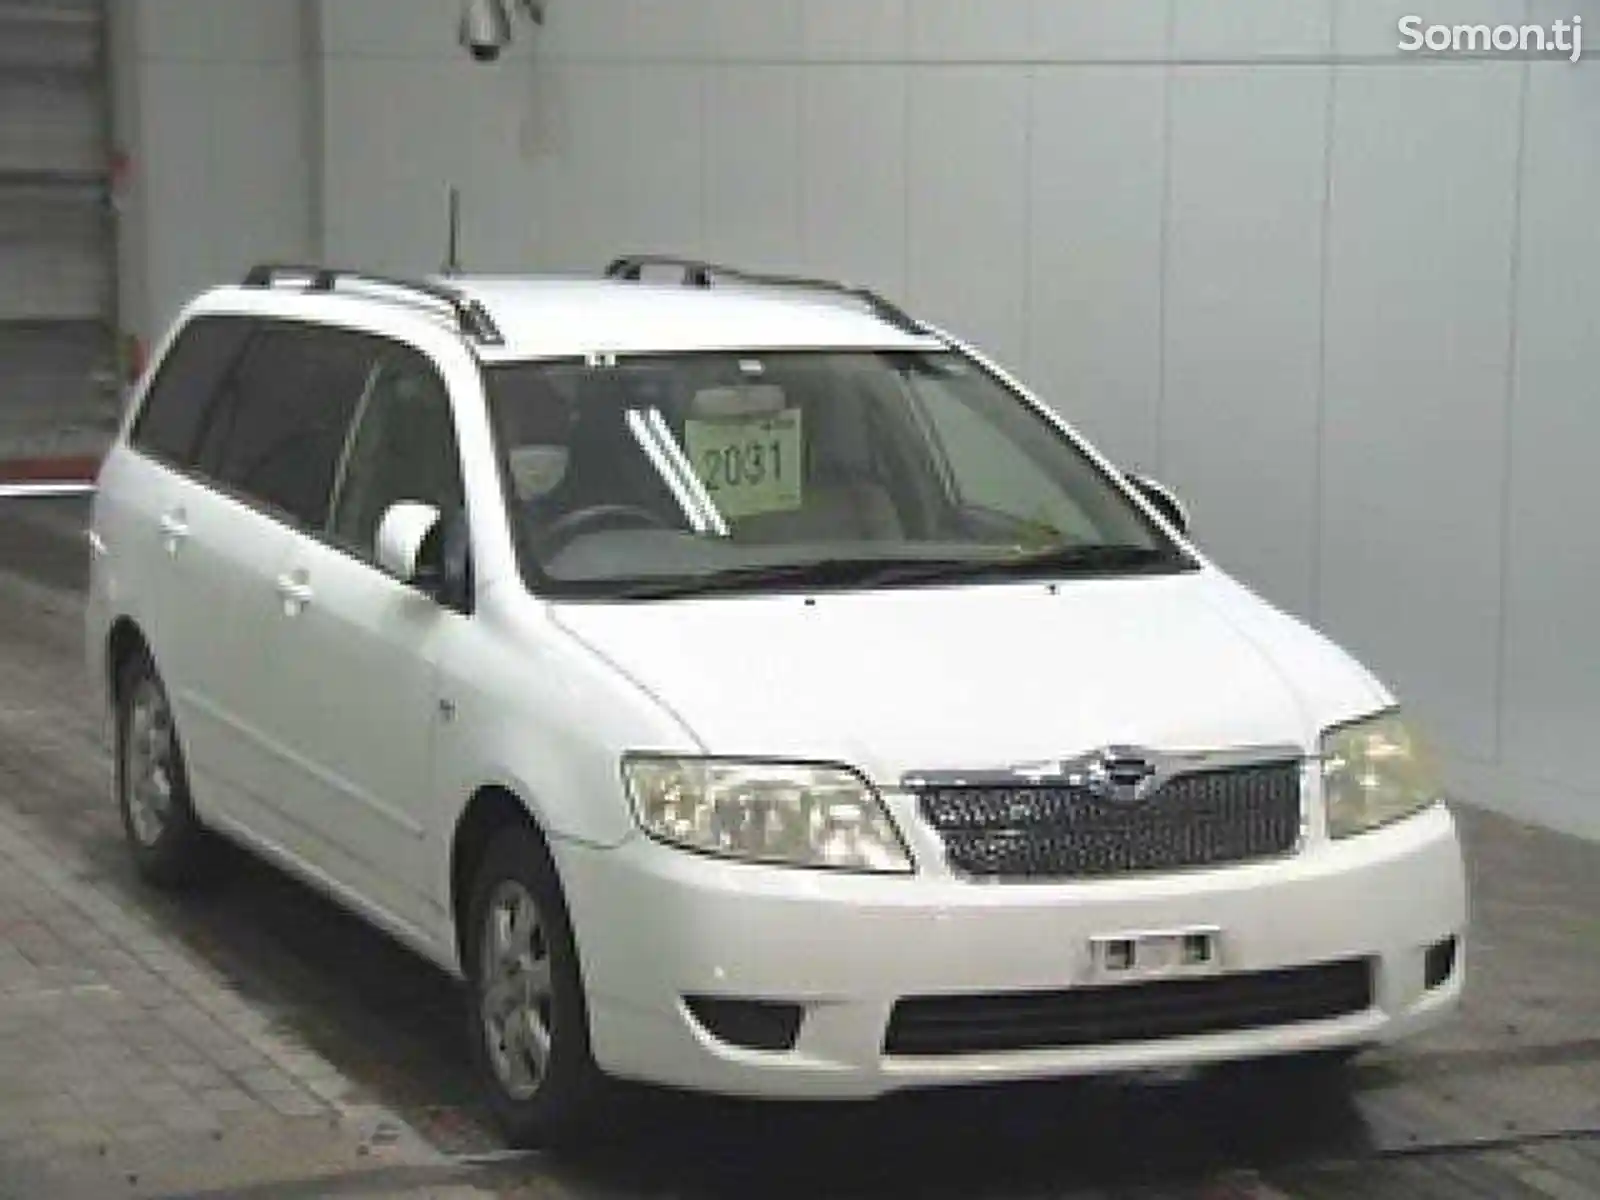 Нетанированые стекла Toyota Corolla 2002-2006